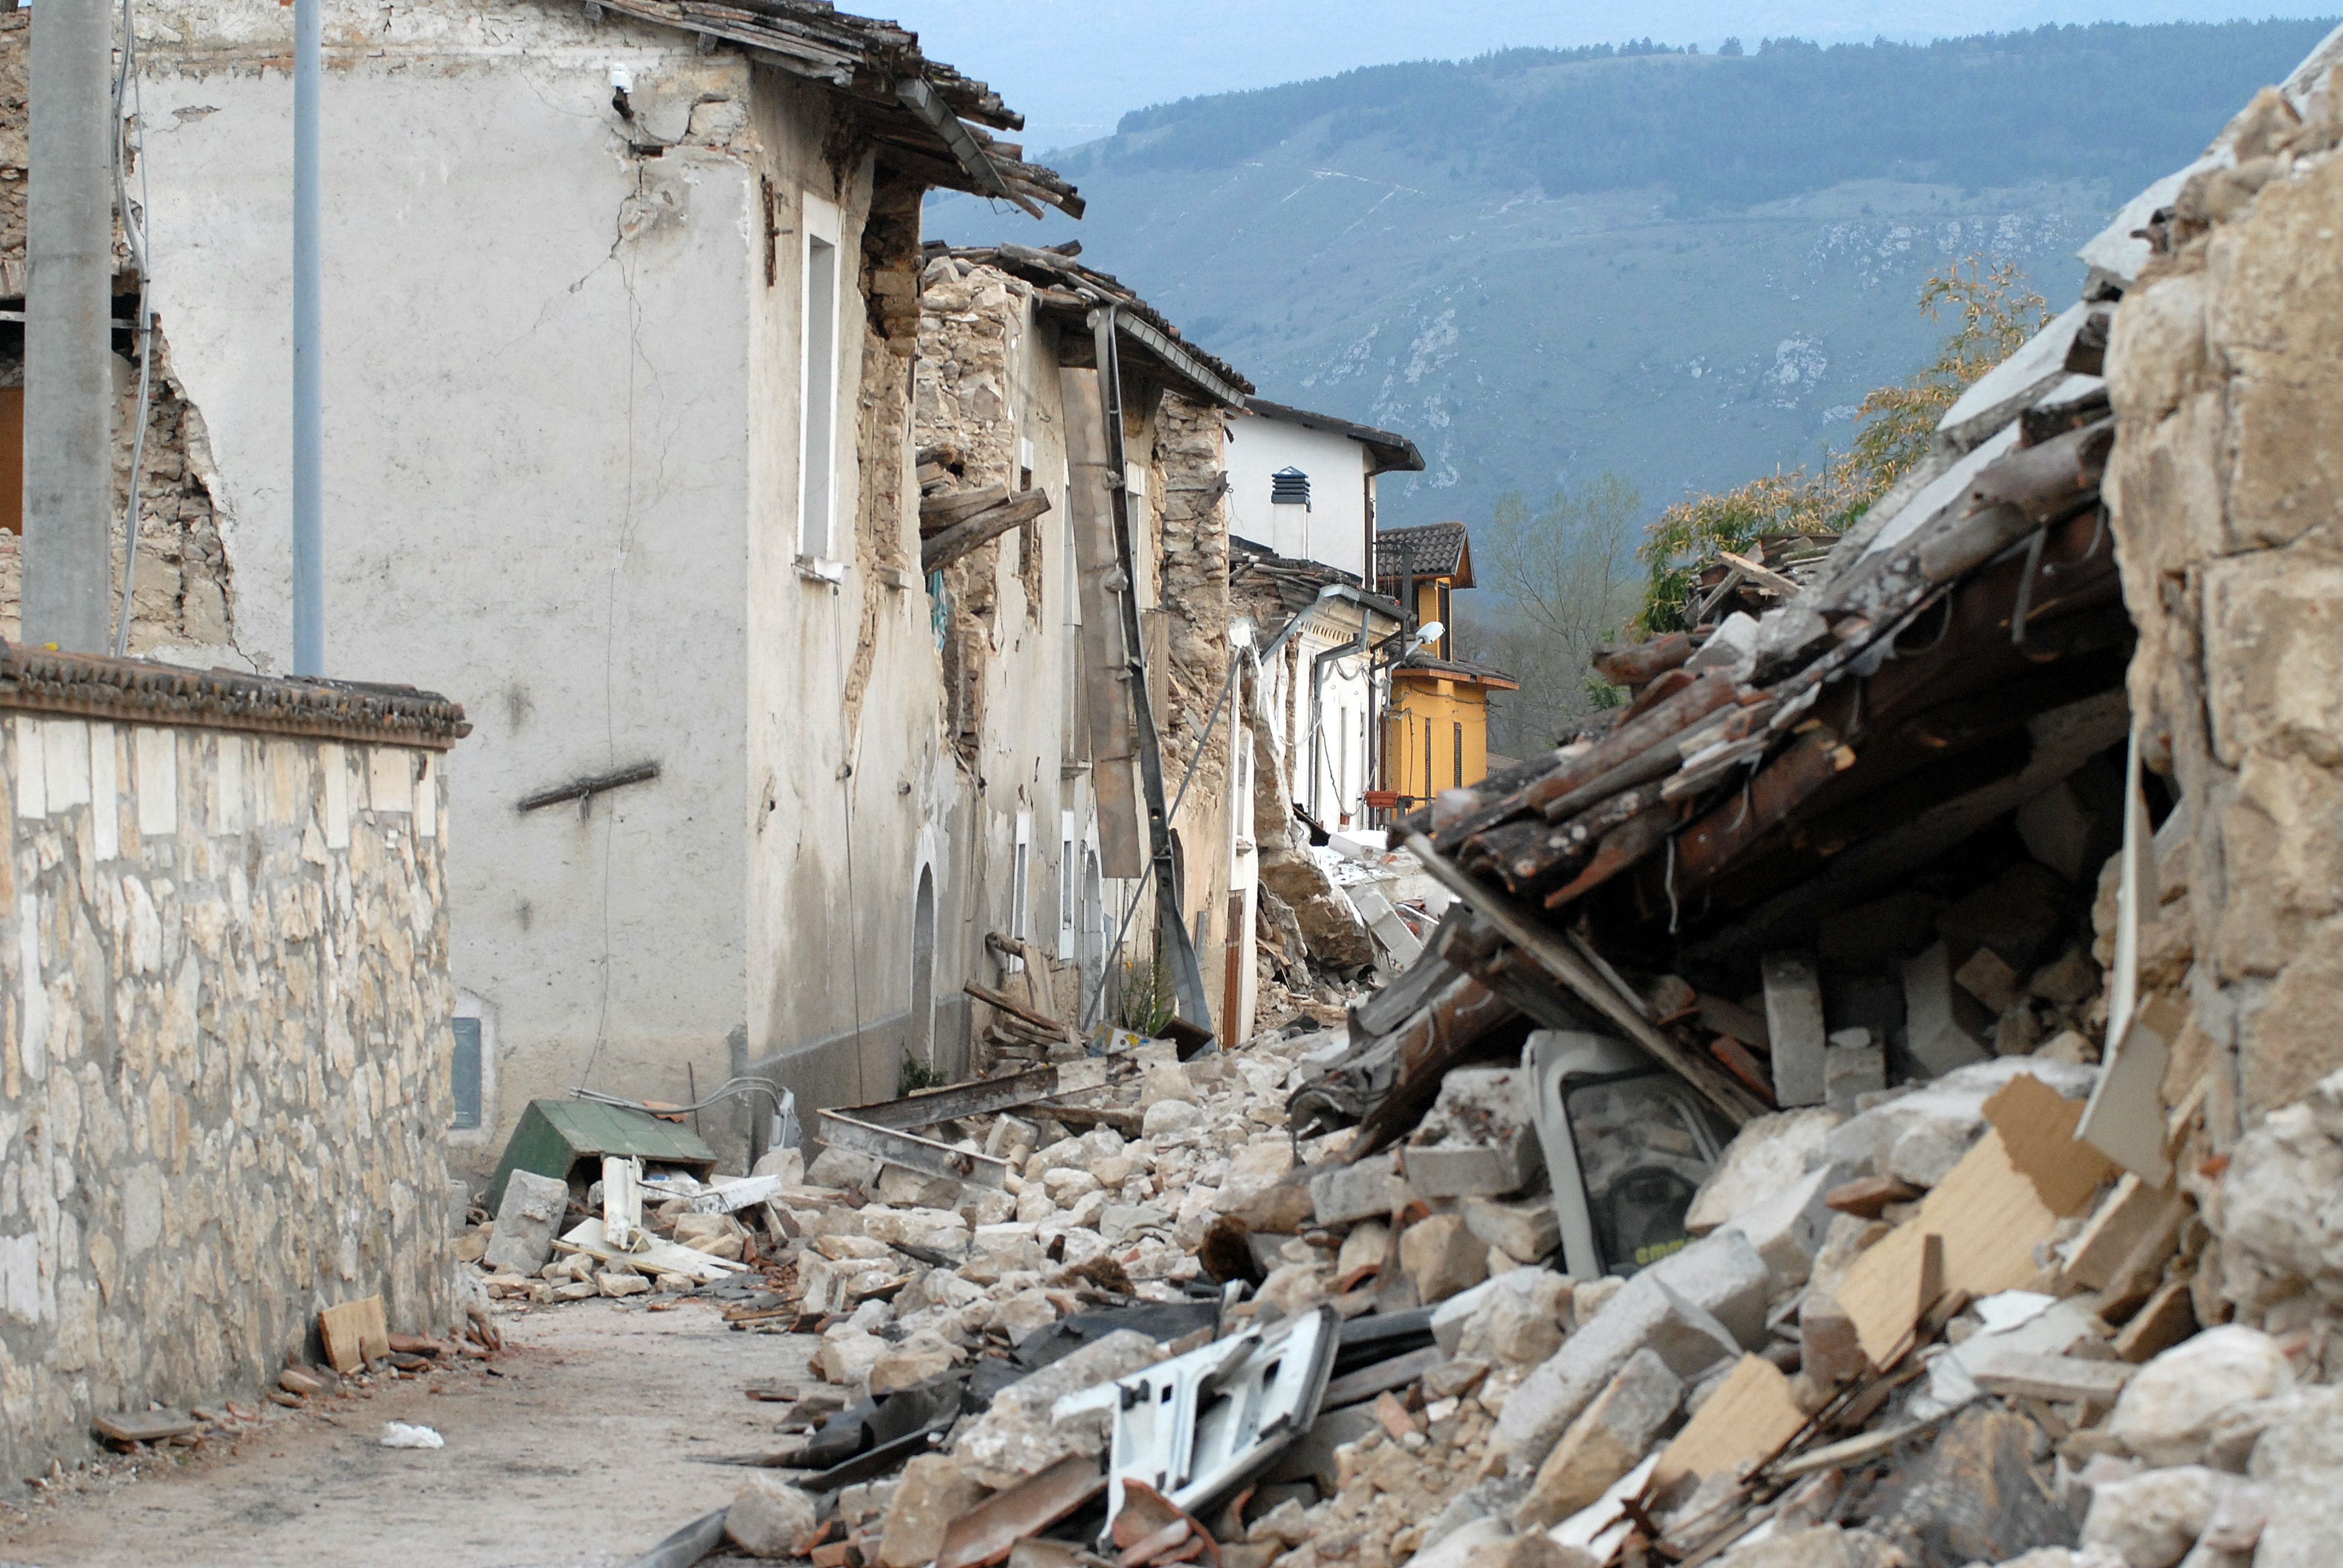 地震的震波對於人口稠密地區是一種很大的傷害，容易造成人們生命財產的損失。